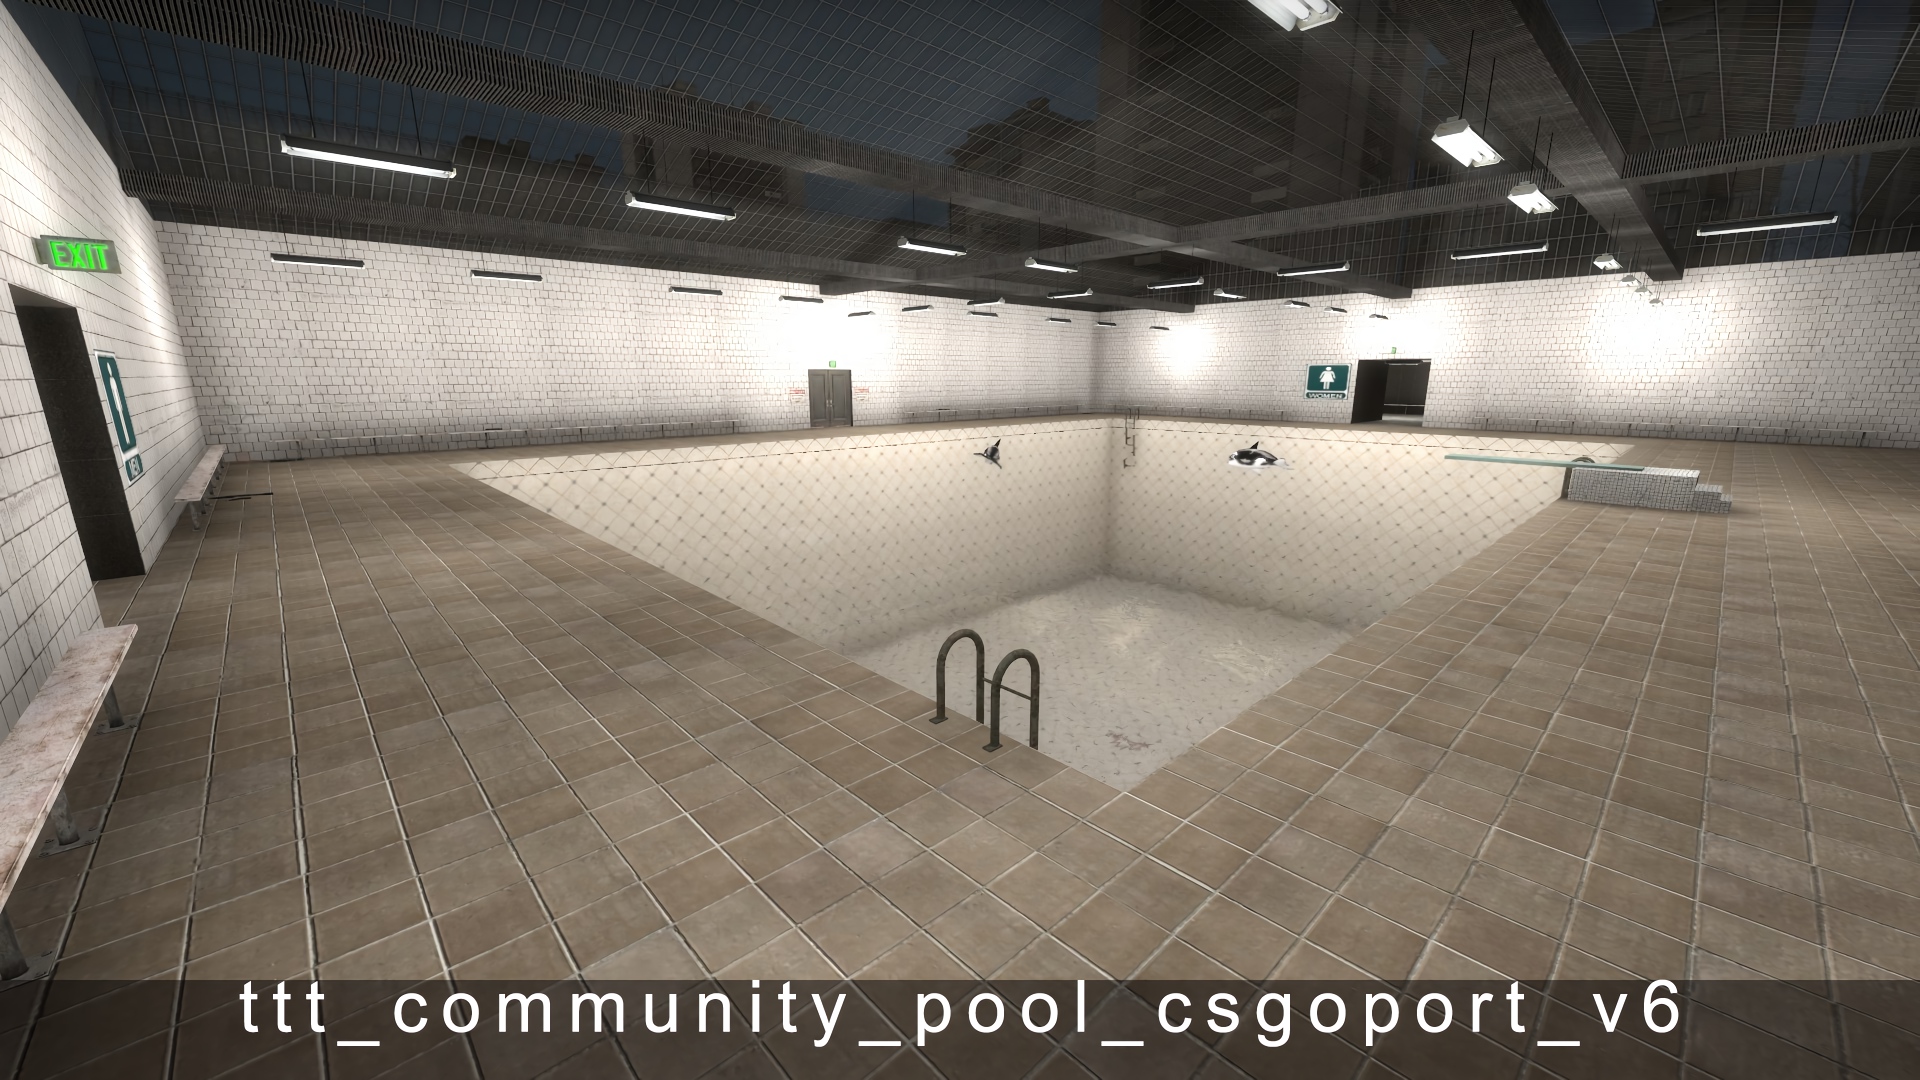 ttt_community_pool_csgoport_v6.jpg